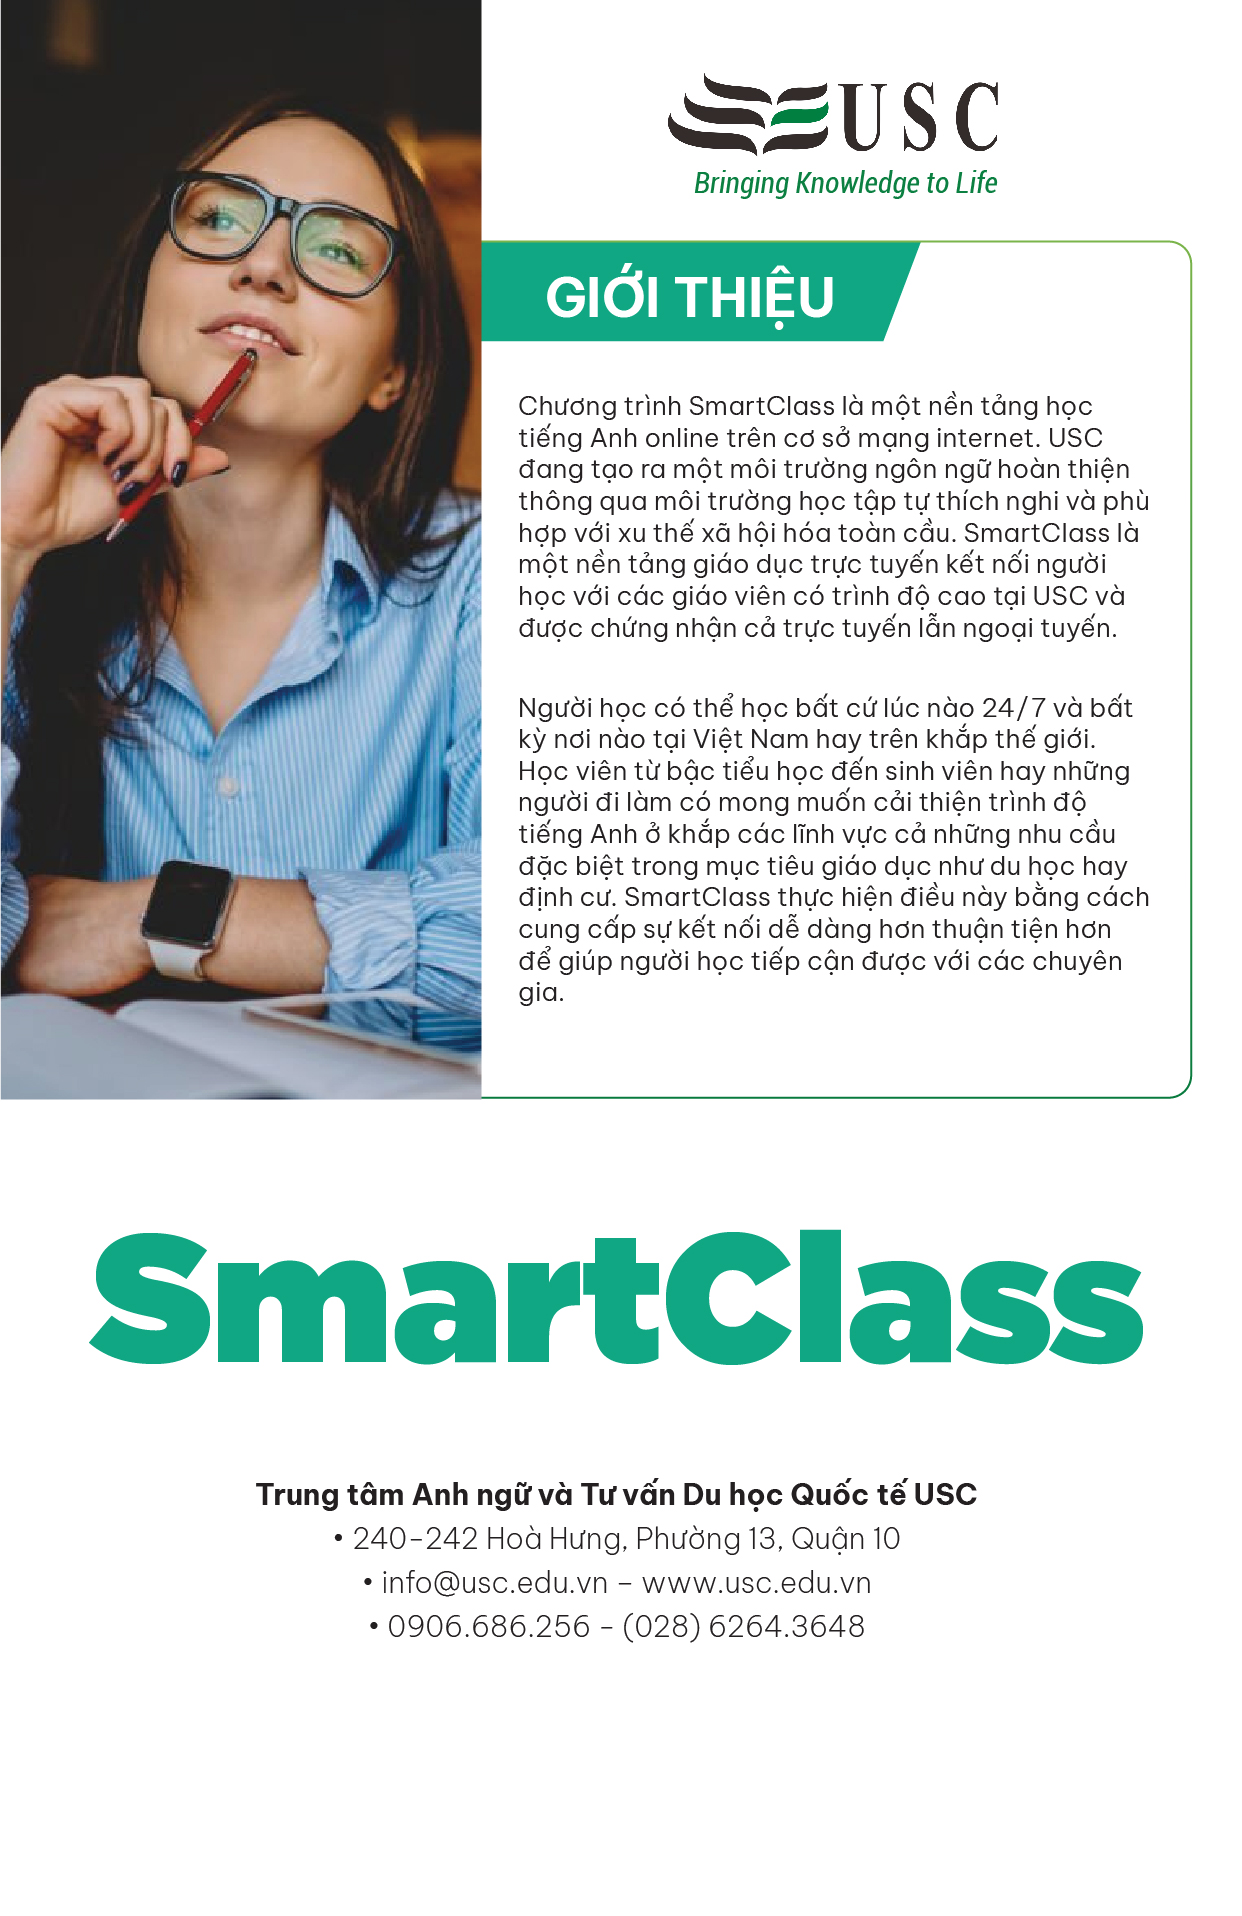 Giới thiệu chương trình SmartClass